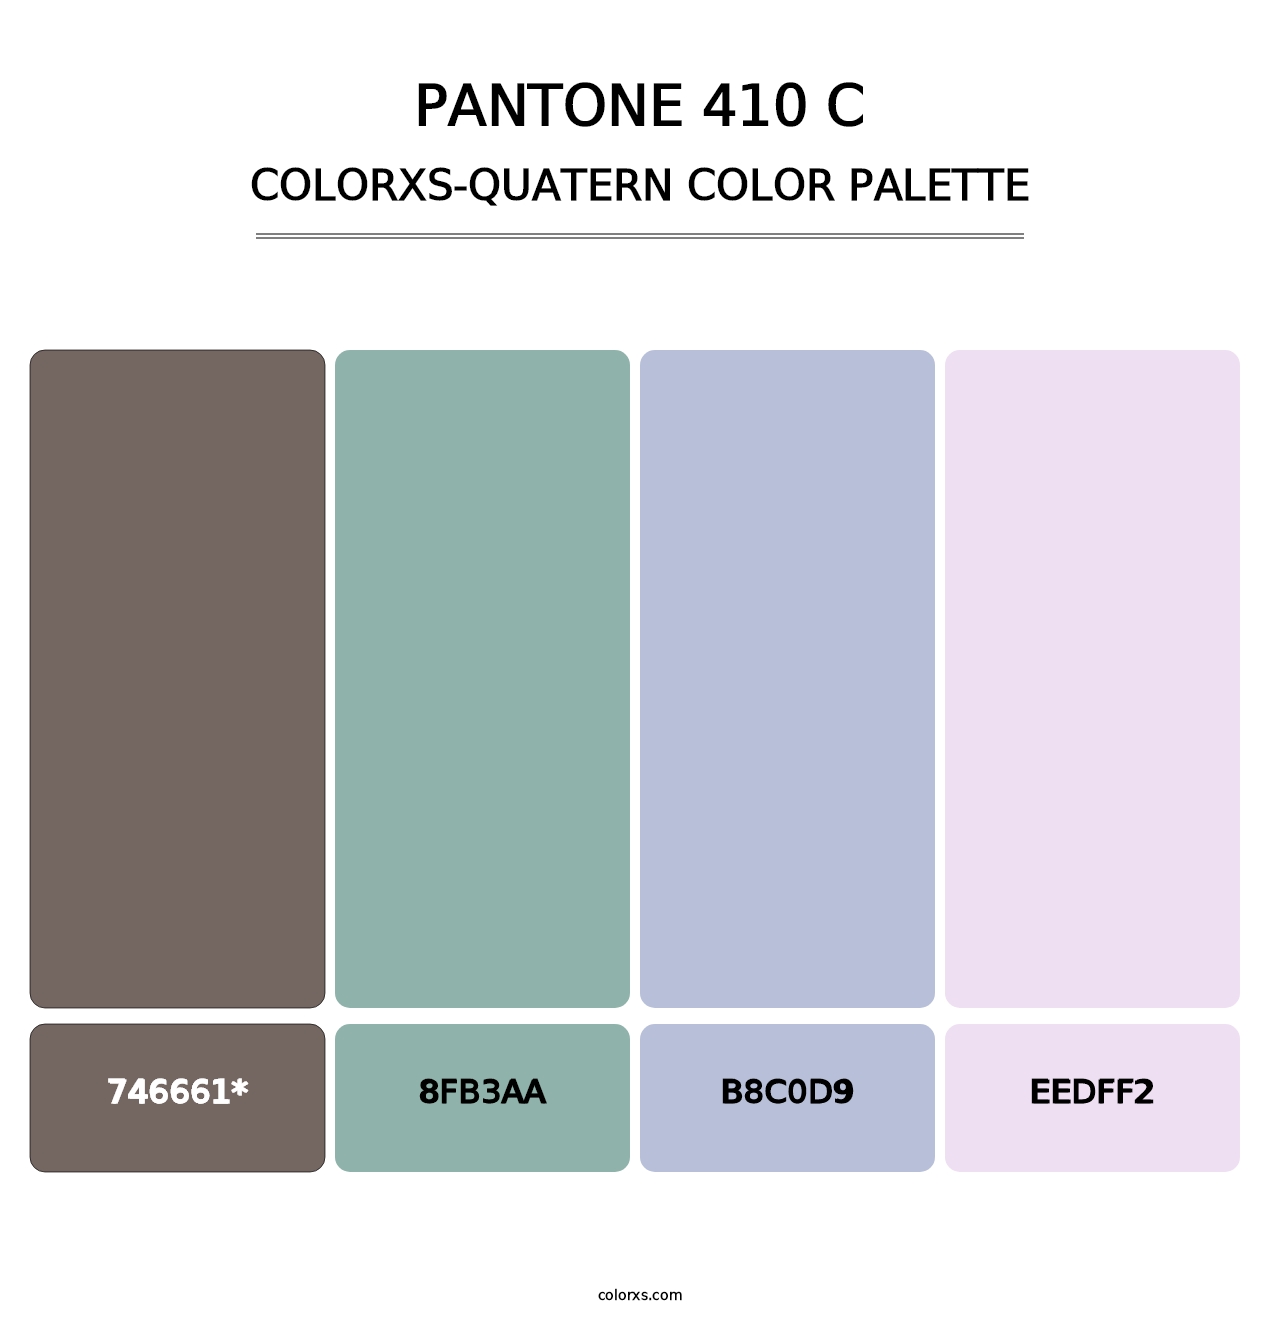 PANTONE 410 C - Colorxs Quatern Palette